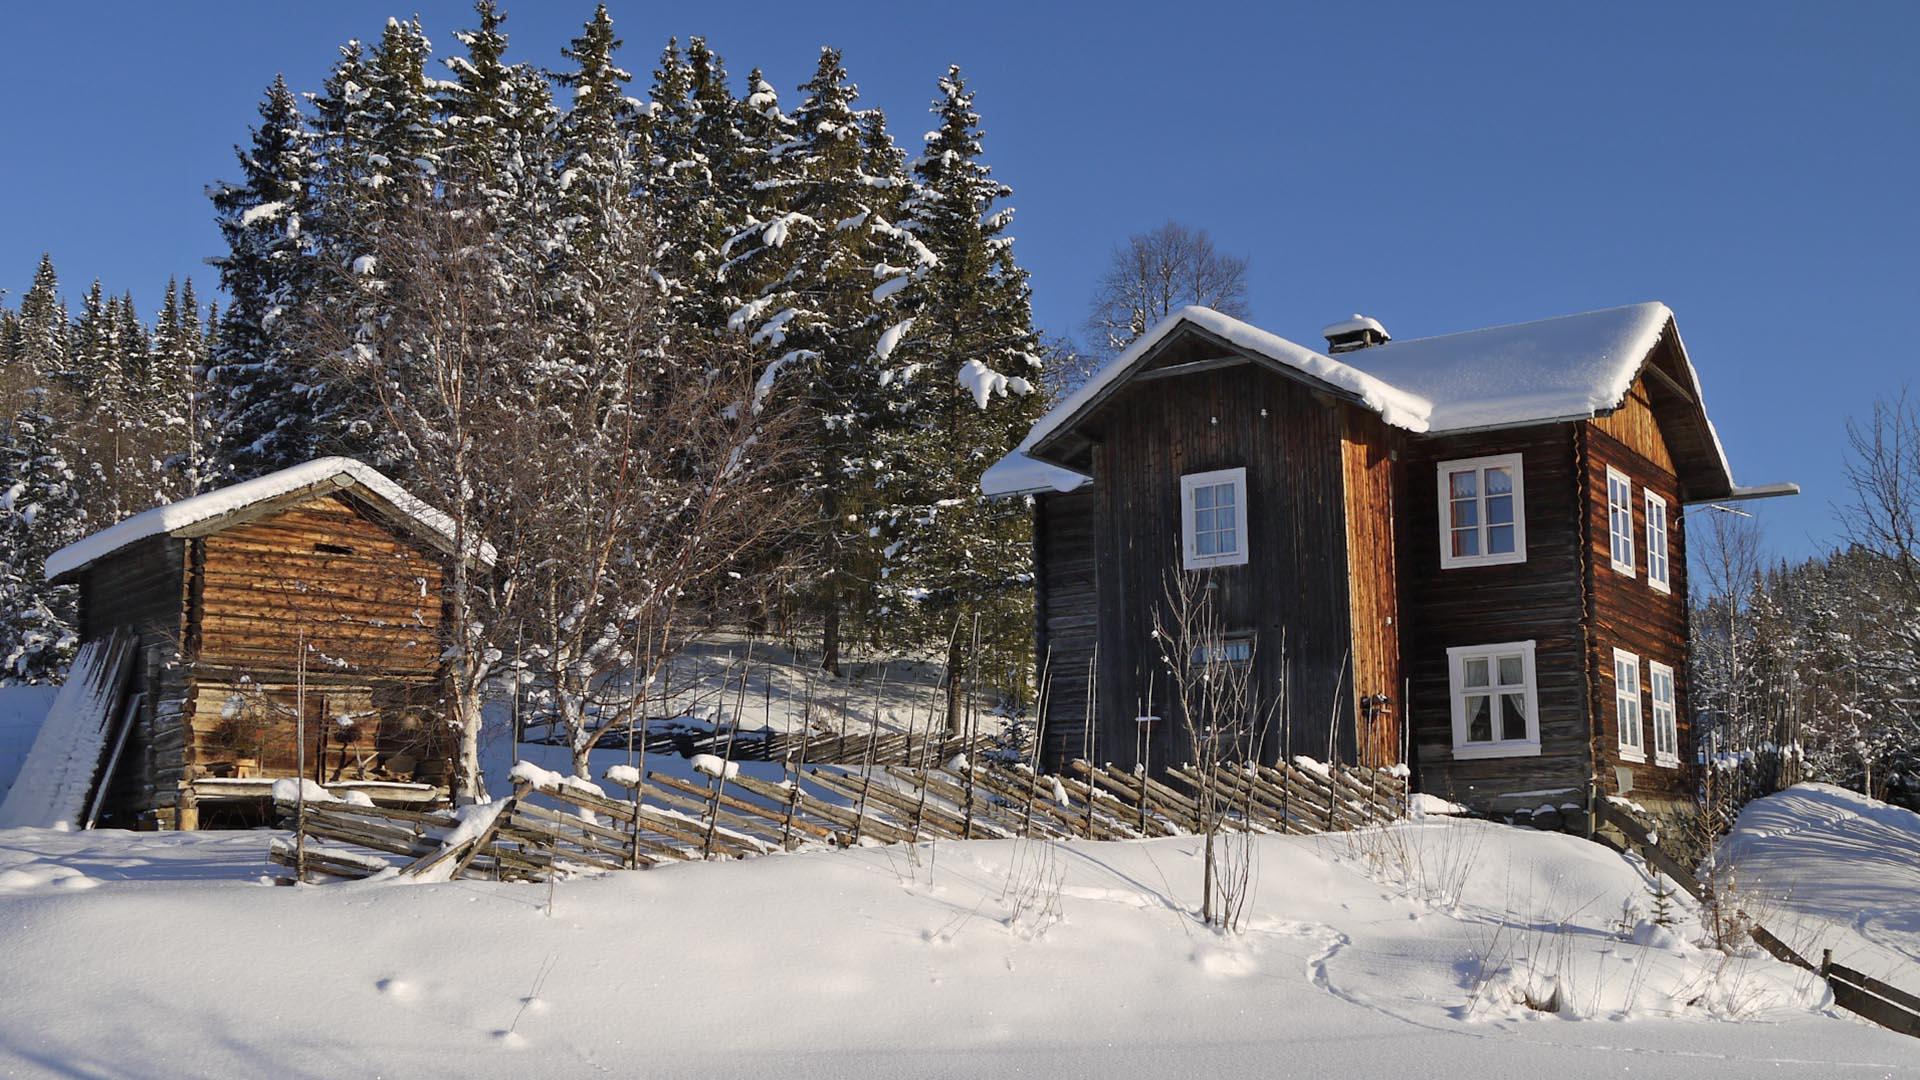 En mørkebrun laftehytte med uthus, skigard og en klynge grantrær bakenfor. Vinter, sol og snø.